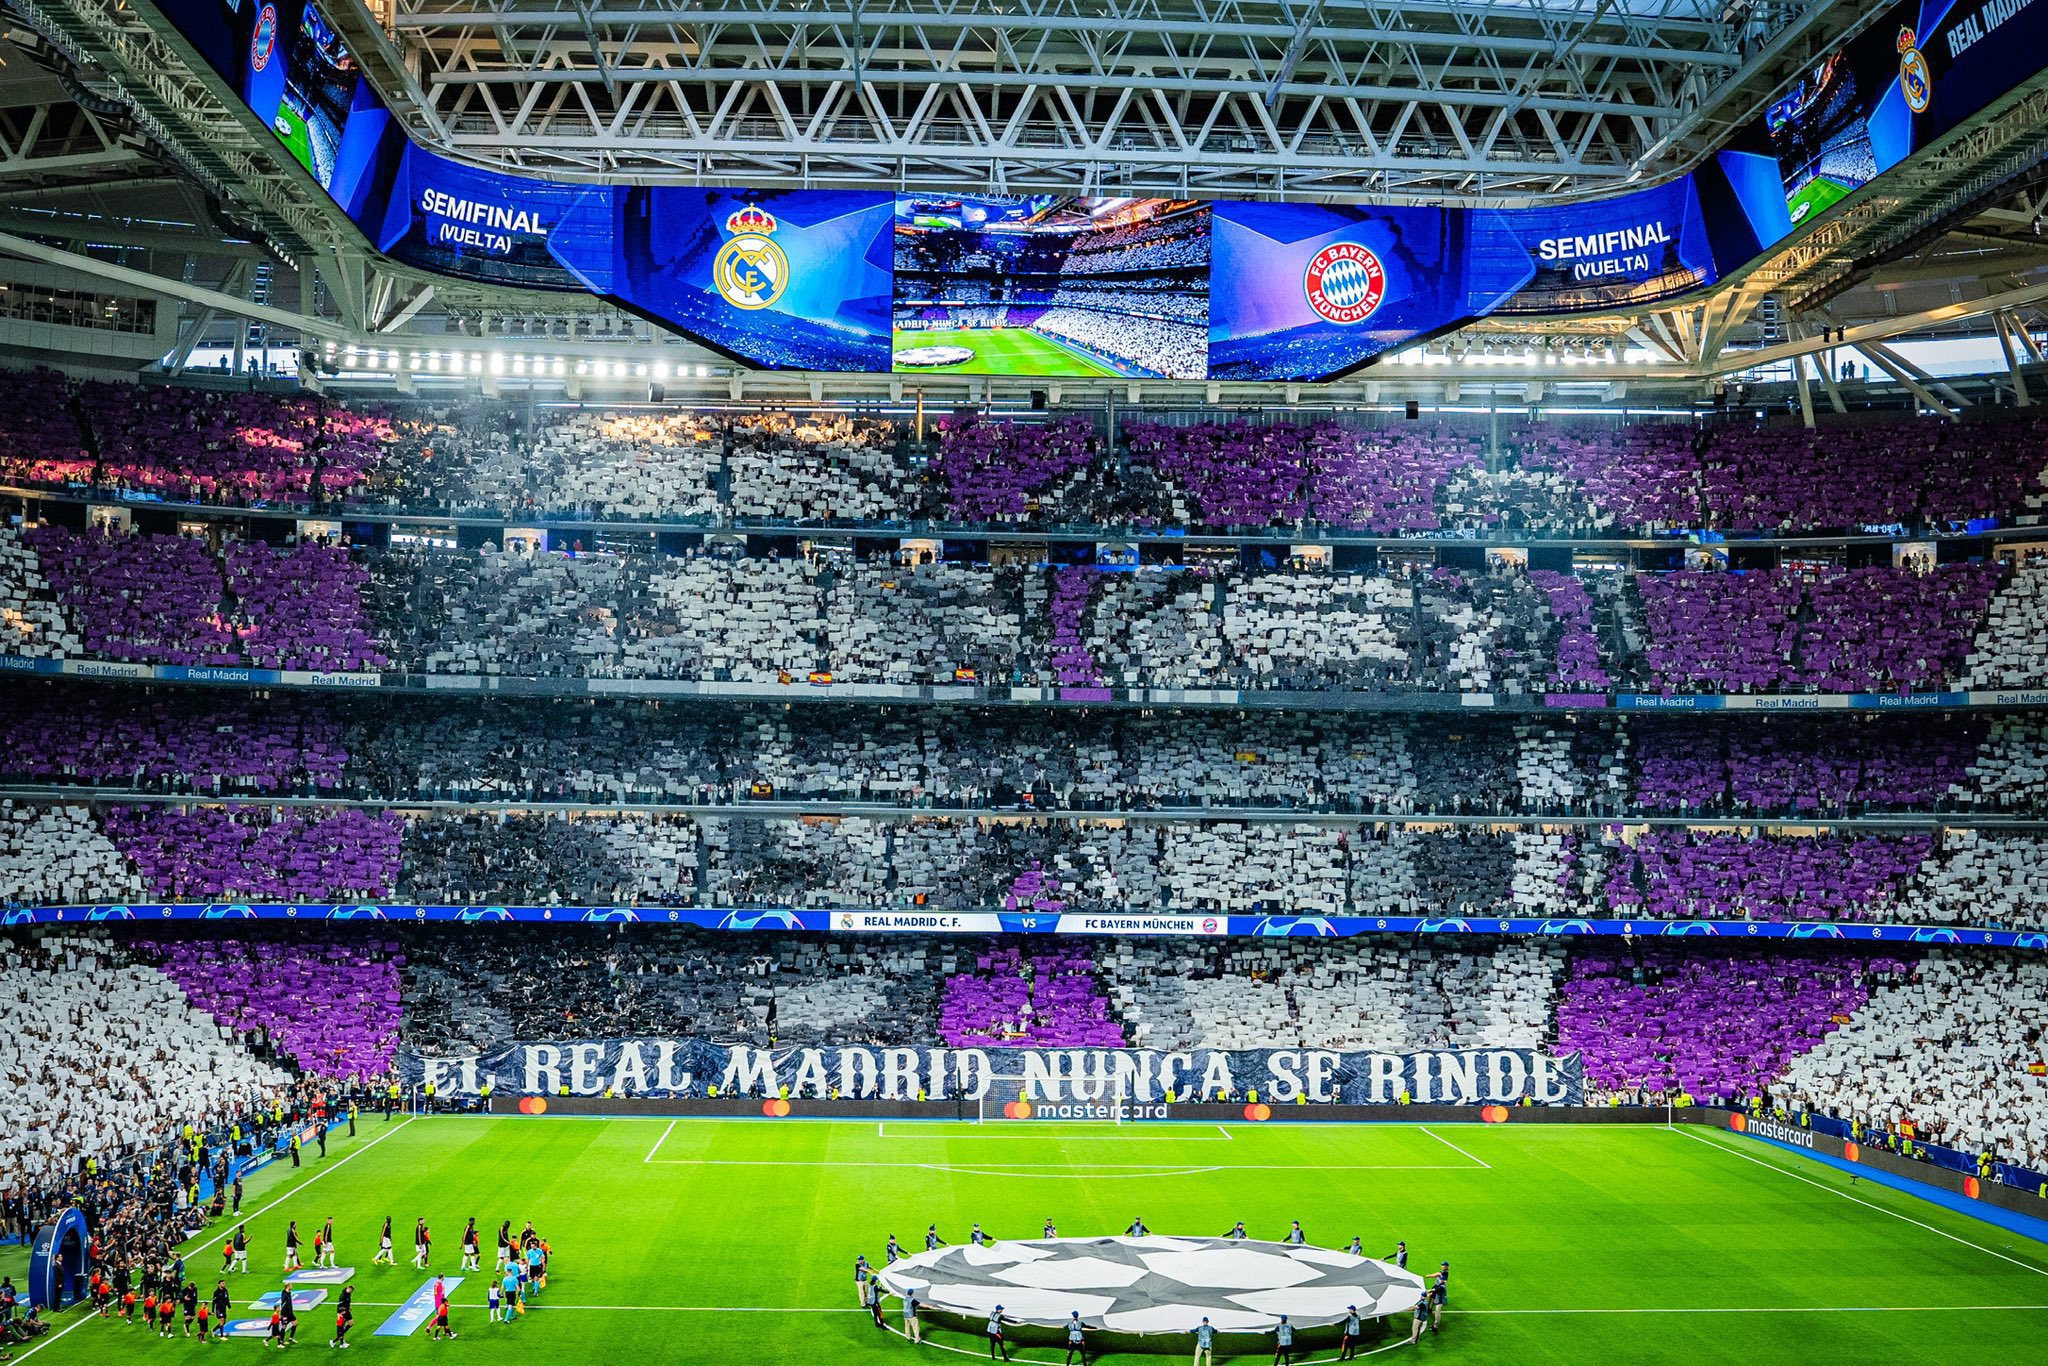 Así van las obras del estadio Santiago Bernabéu  2 - Página 29 GNH-H-CWEAAzov4?format=jpg&name=large